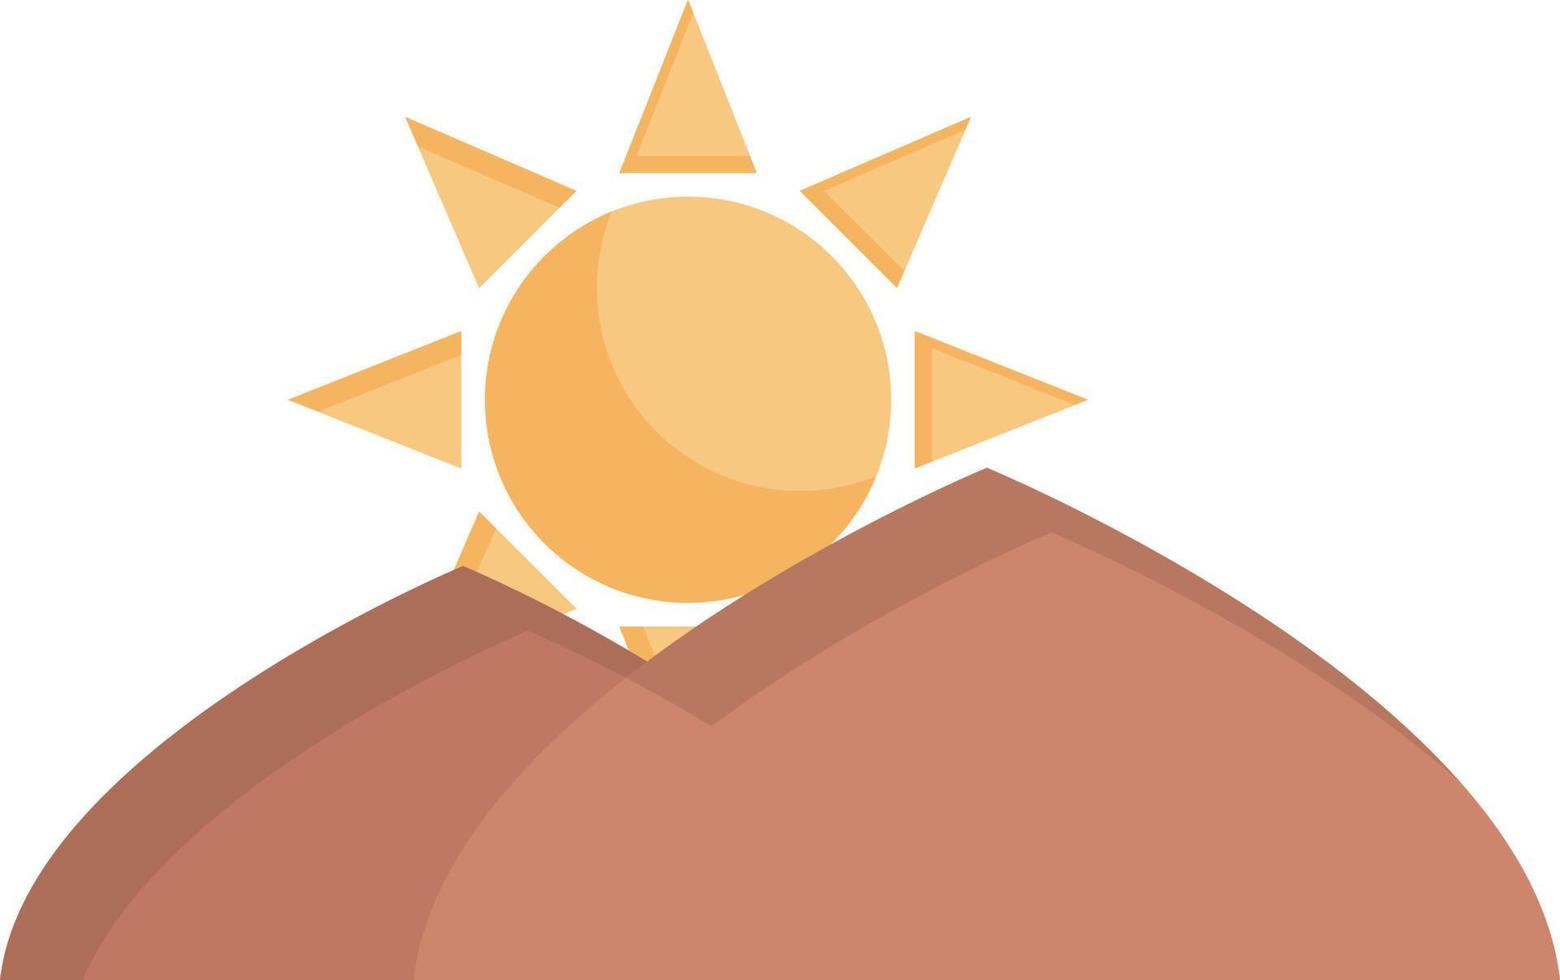 Sol berg vektor illustration på en bakgrund.premium kvalitet symbols.vector ikoner för begrepp och grafisk design.